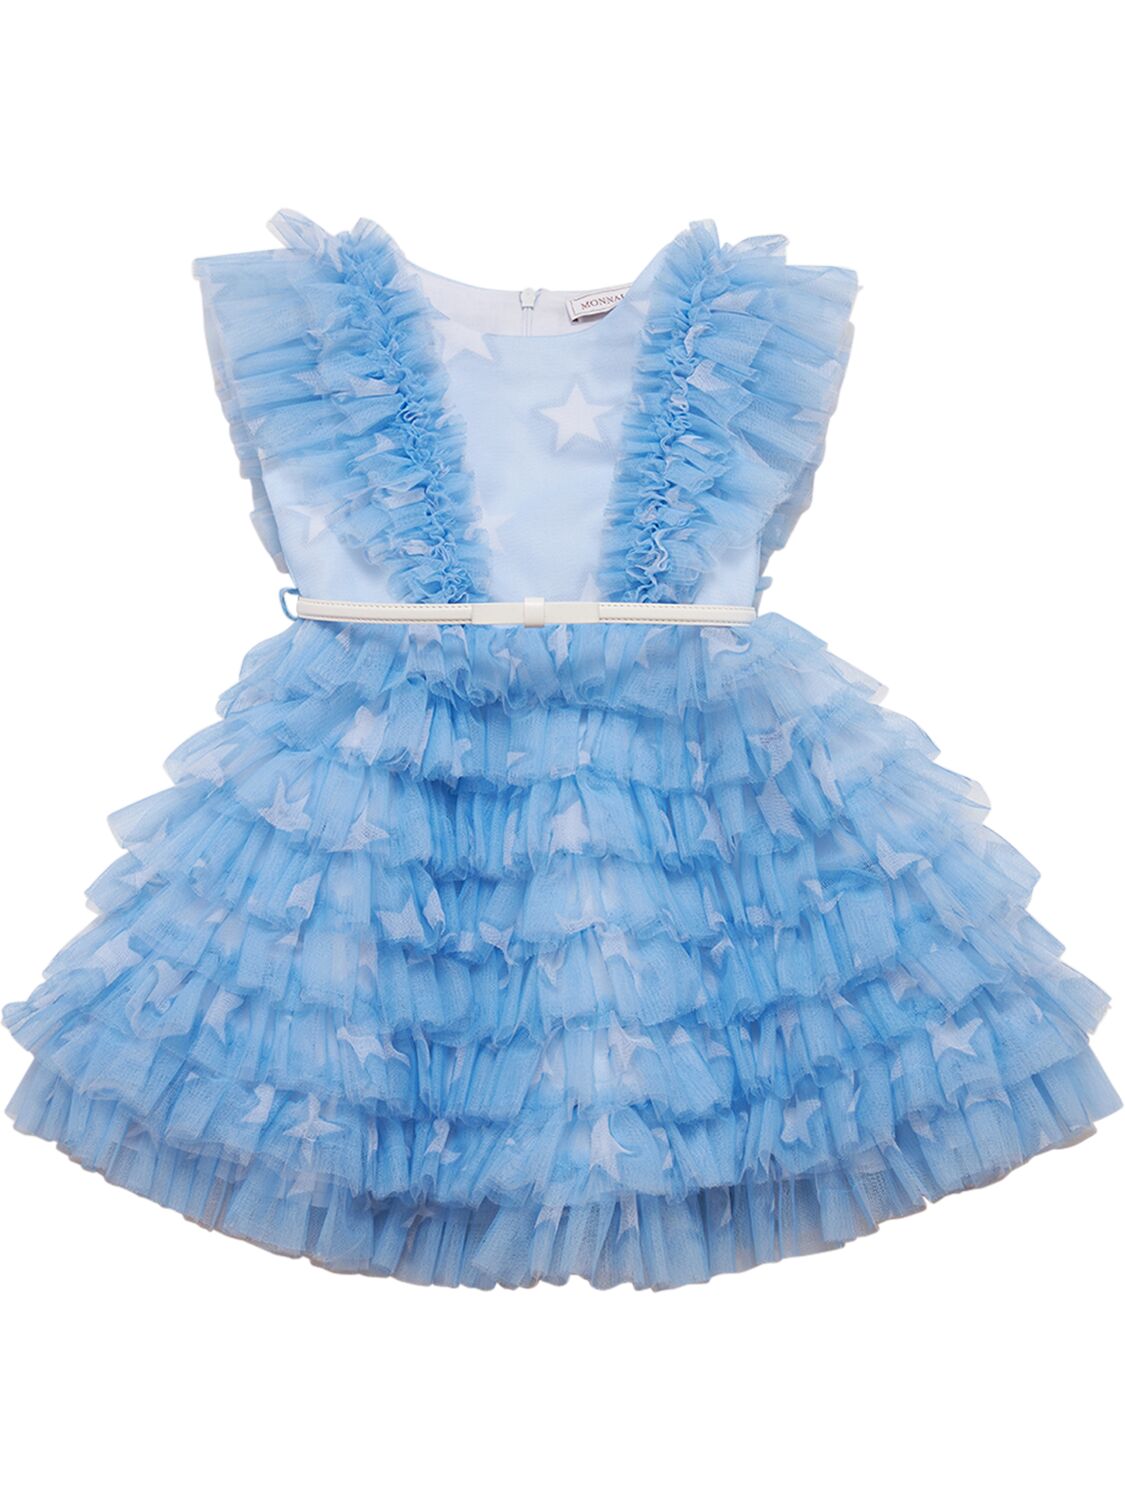 Monnalisa Kids' Star-print Tulle Dress In Light Blue